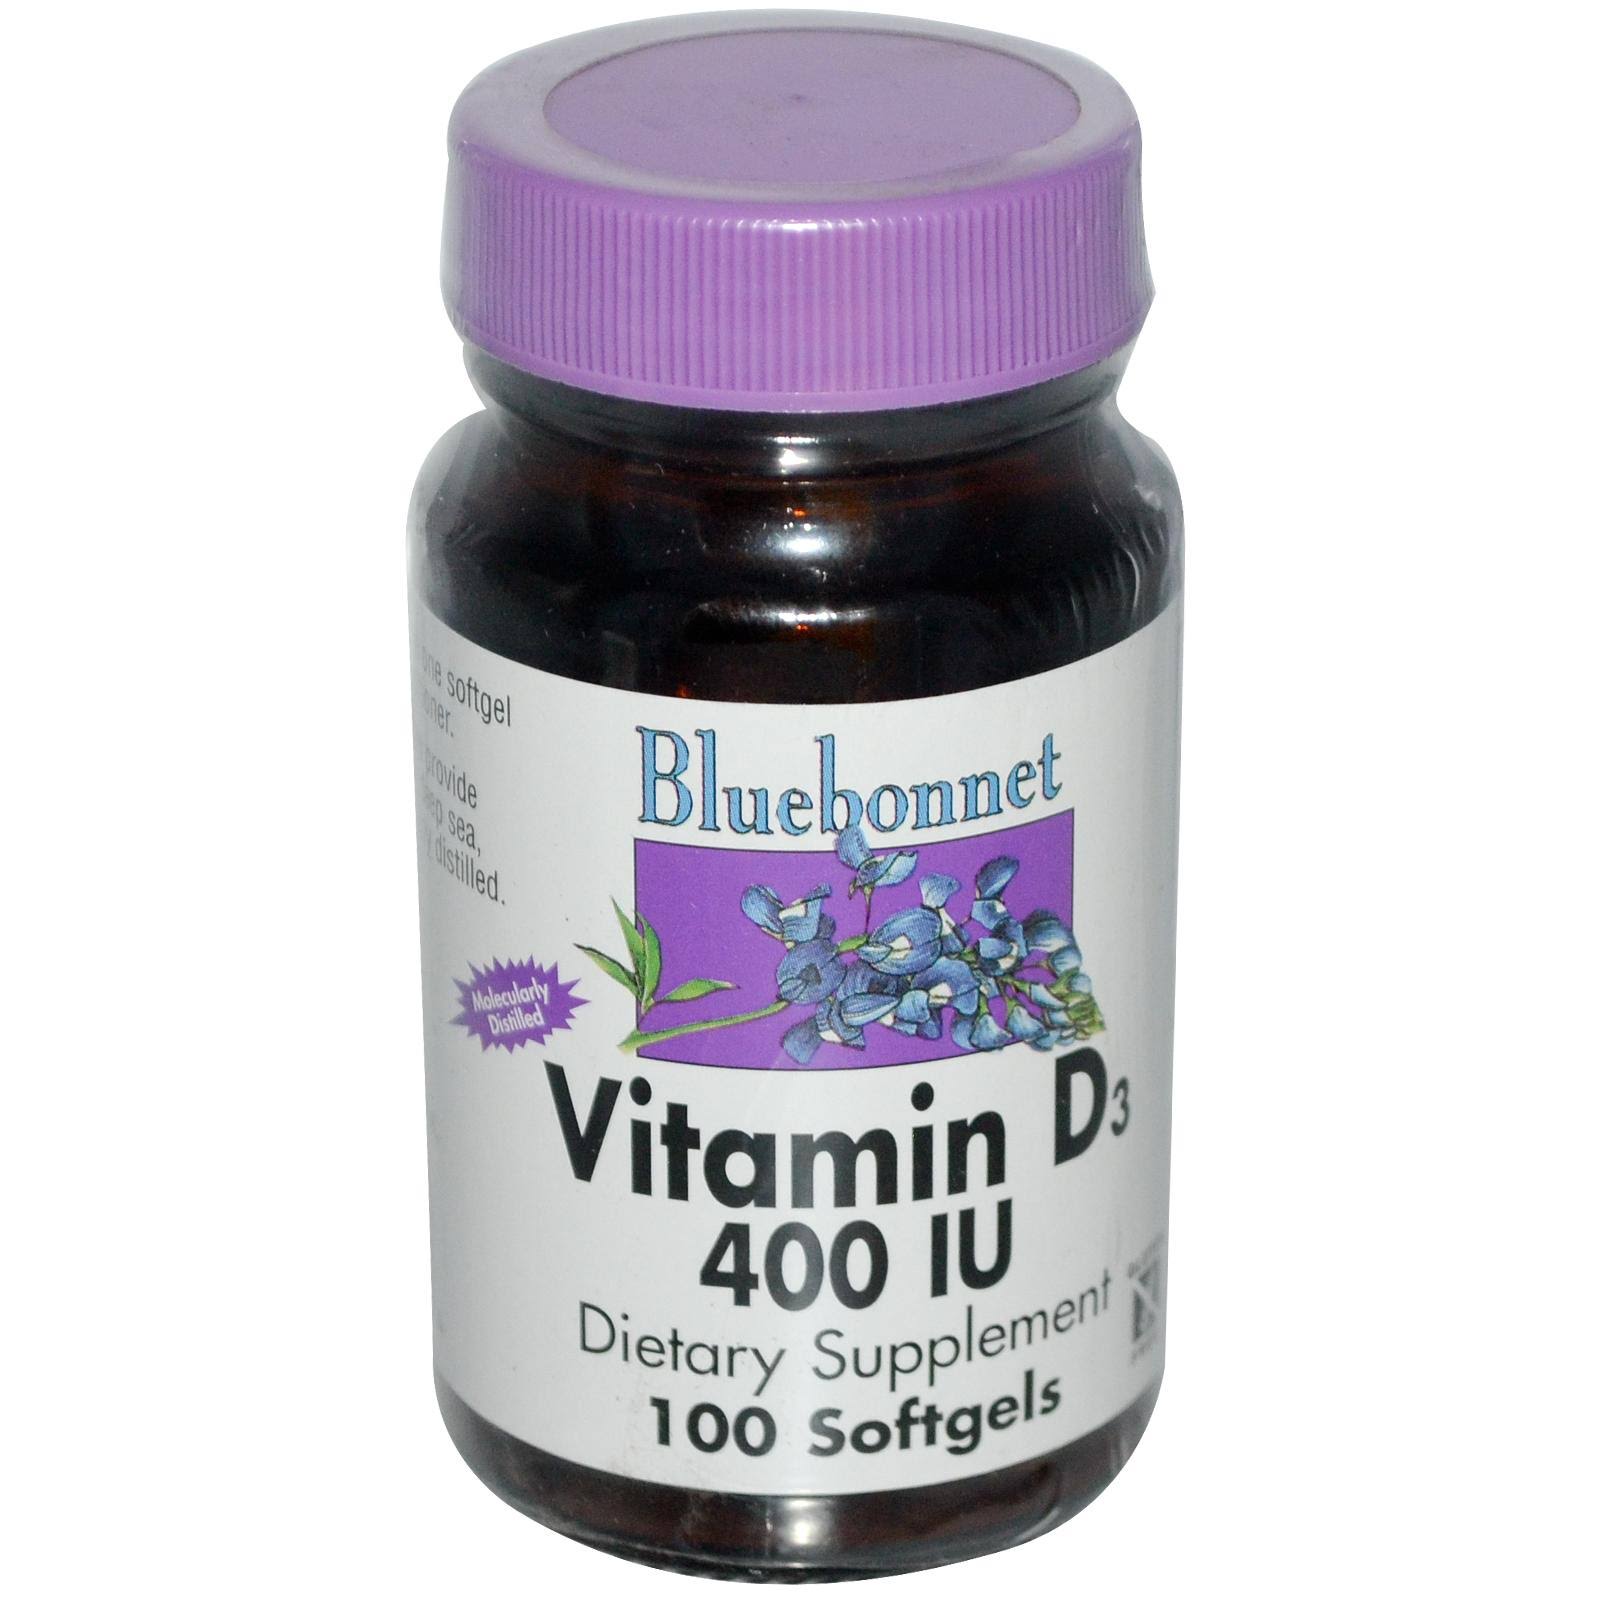 Bluebonnet Vitamin D3 400 IU - 100 Softgels/